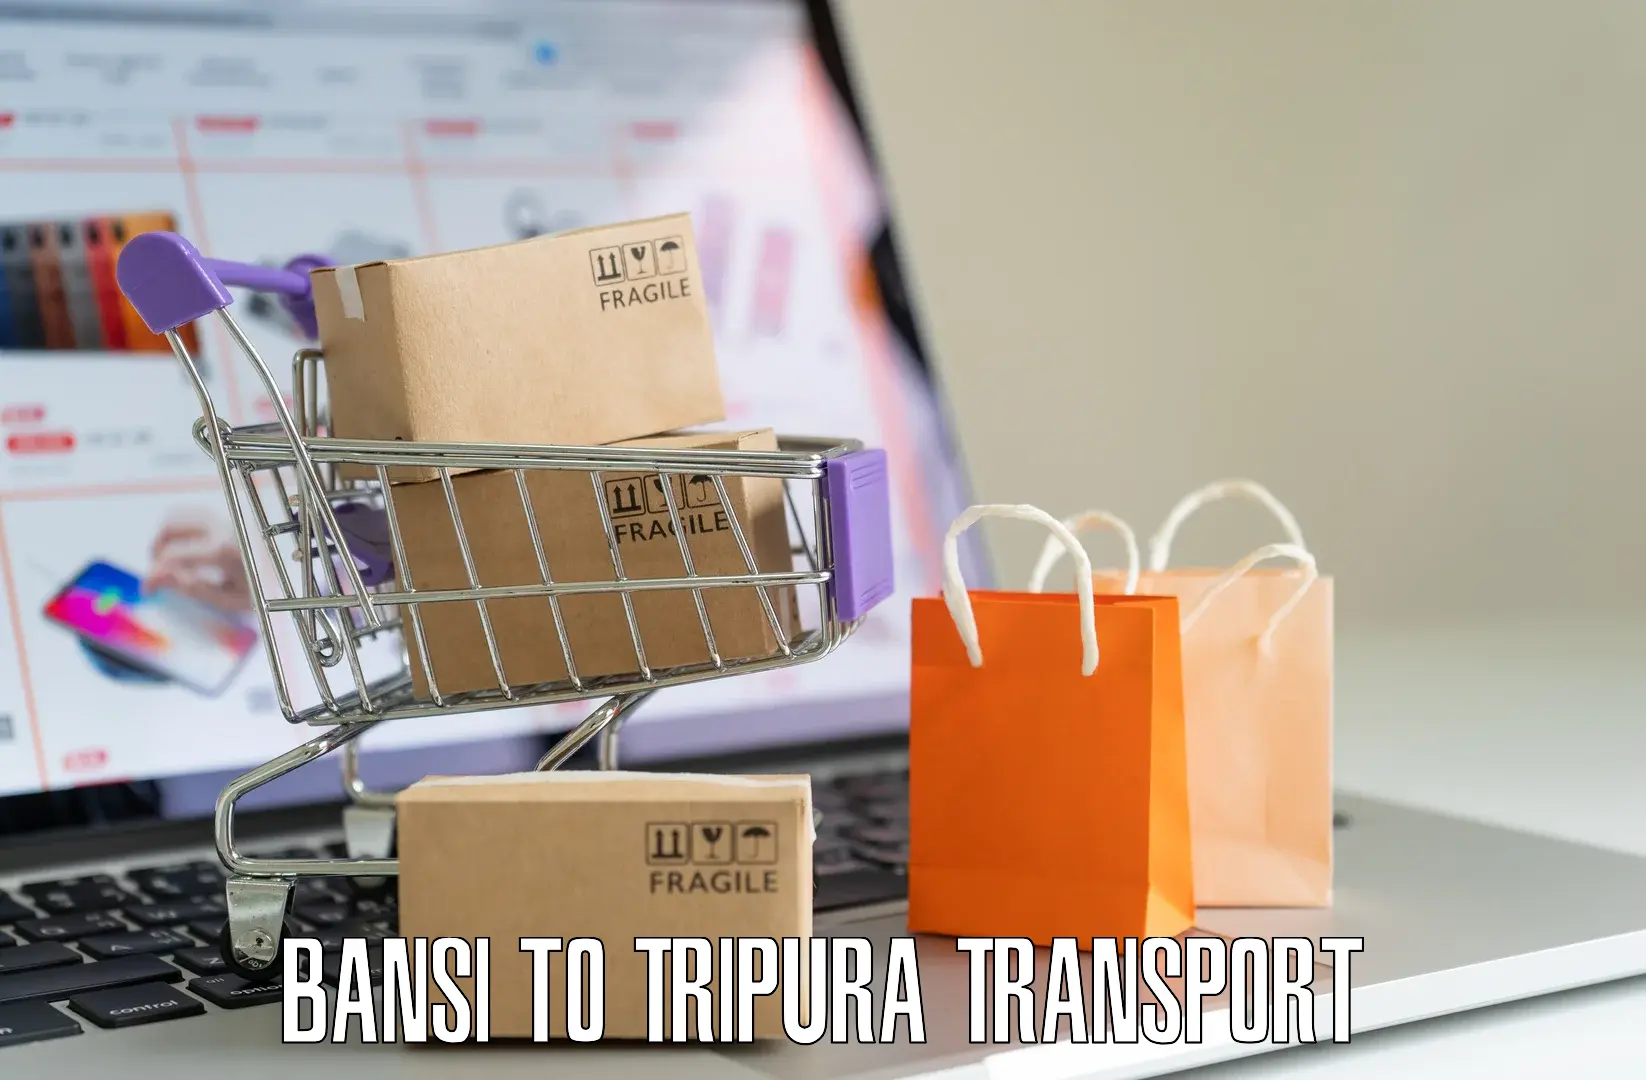 Online transport booking Bansi to Udaipur Tripura